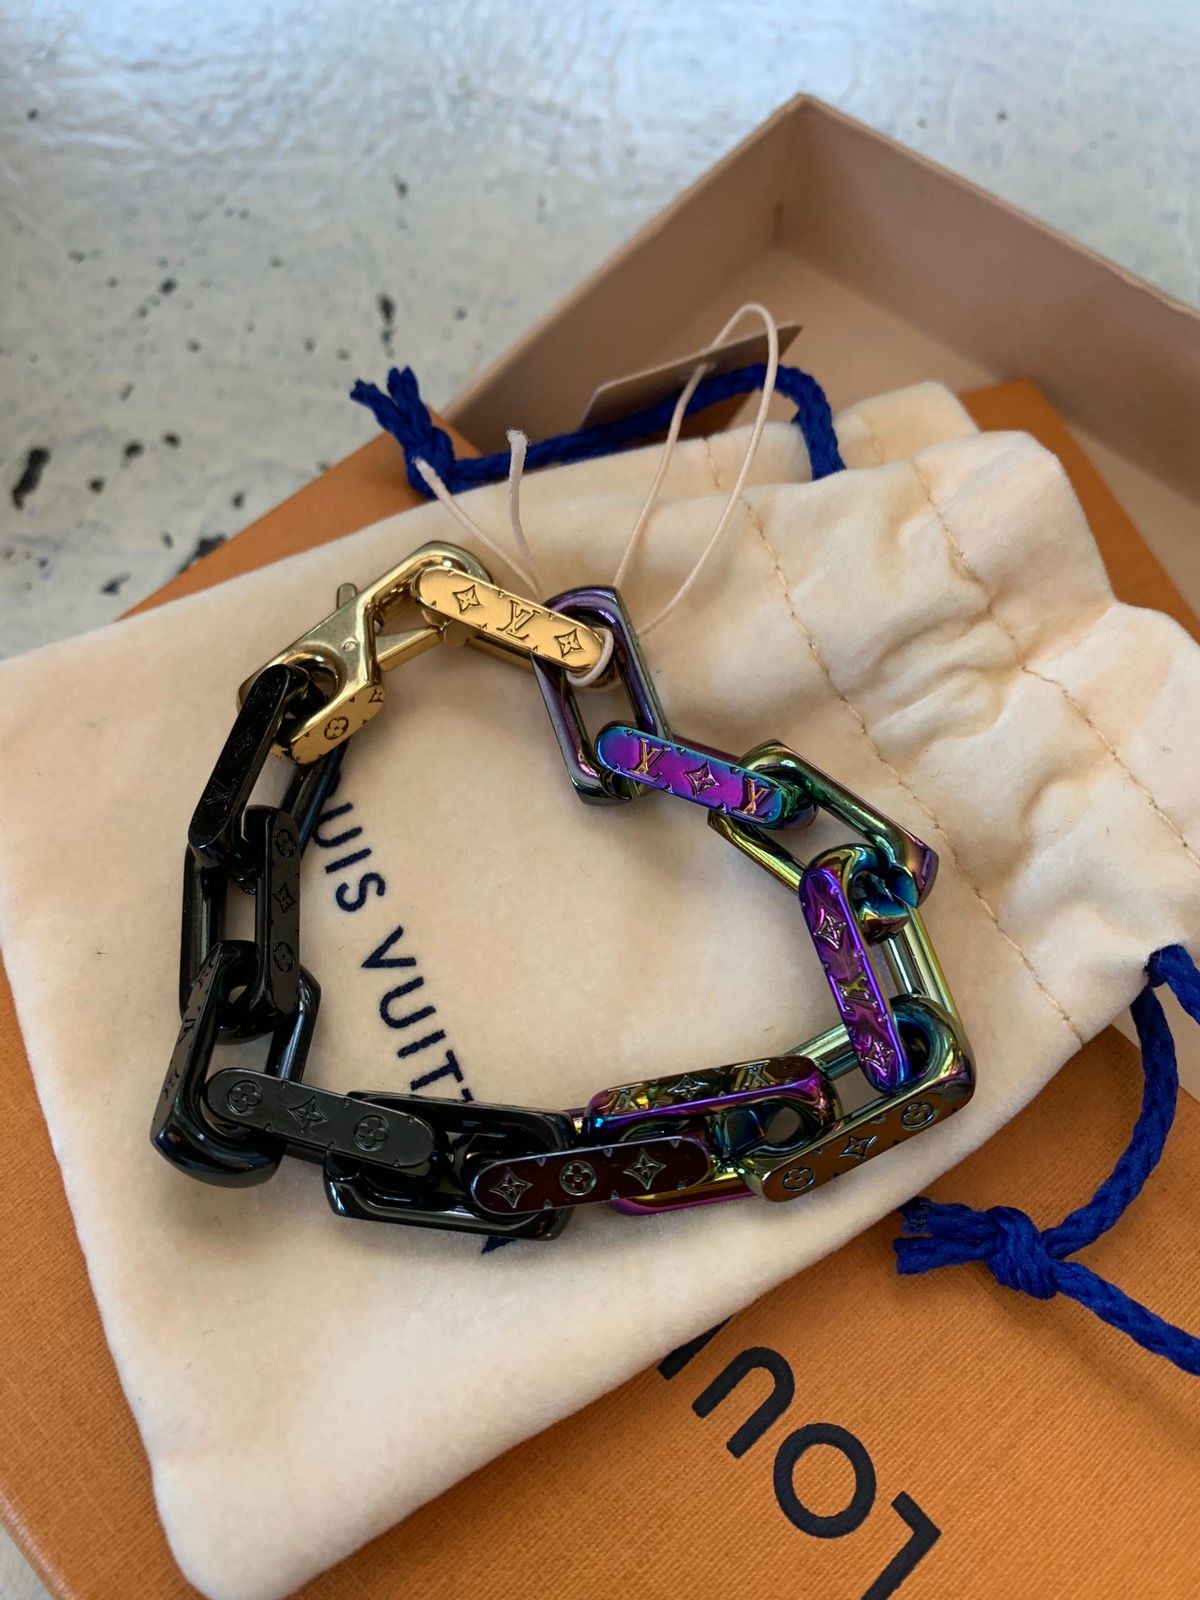 Louis Vuitton Monogram Bracelet Virgil